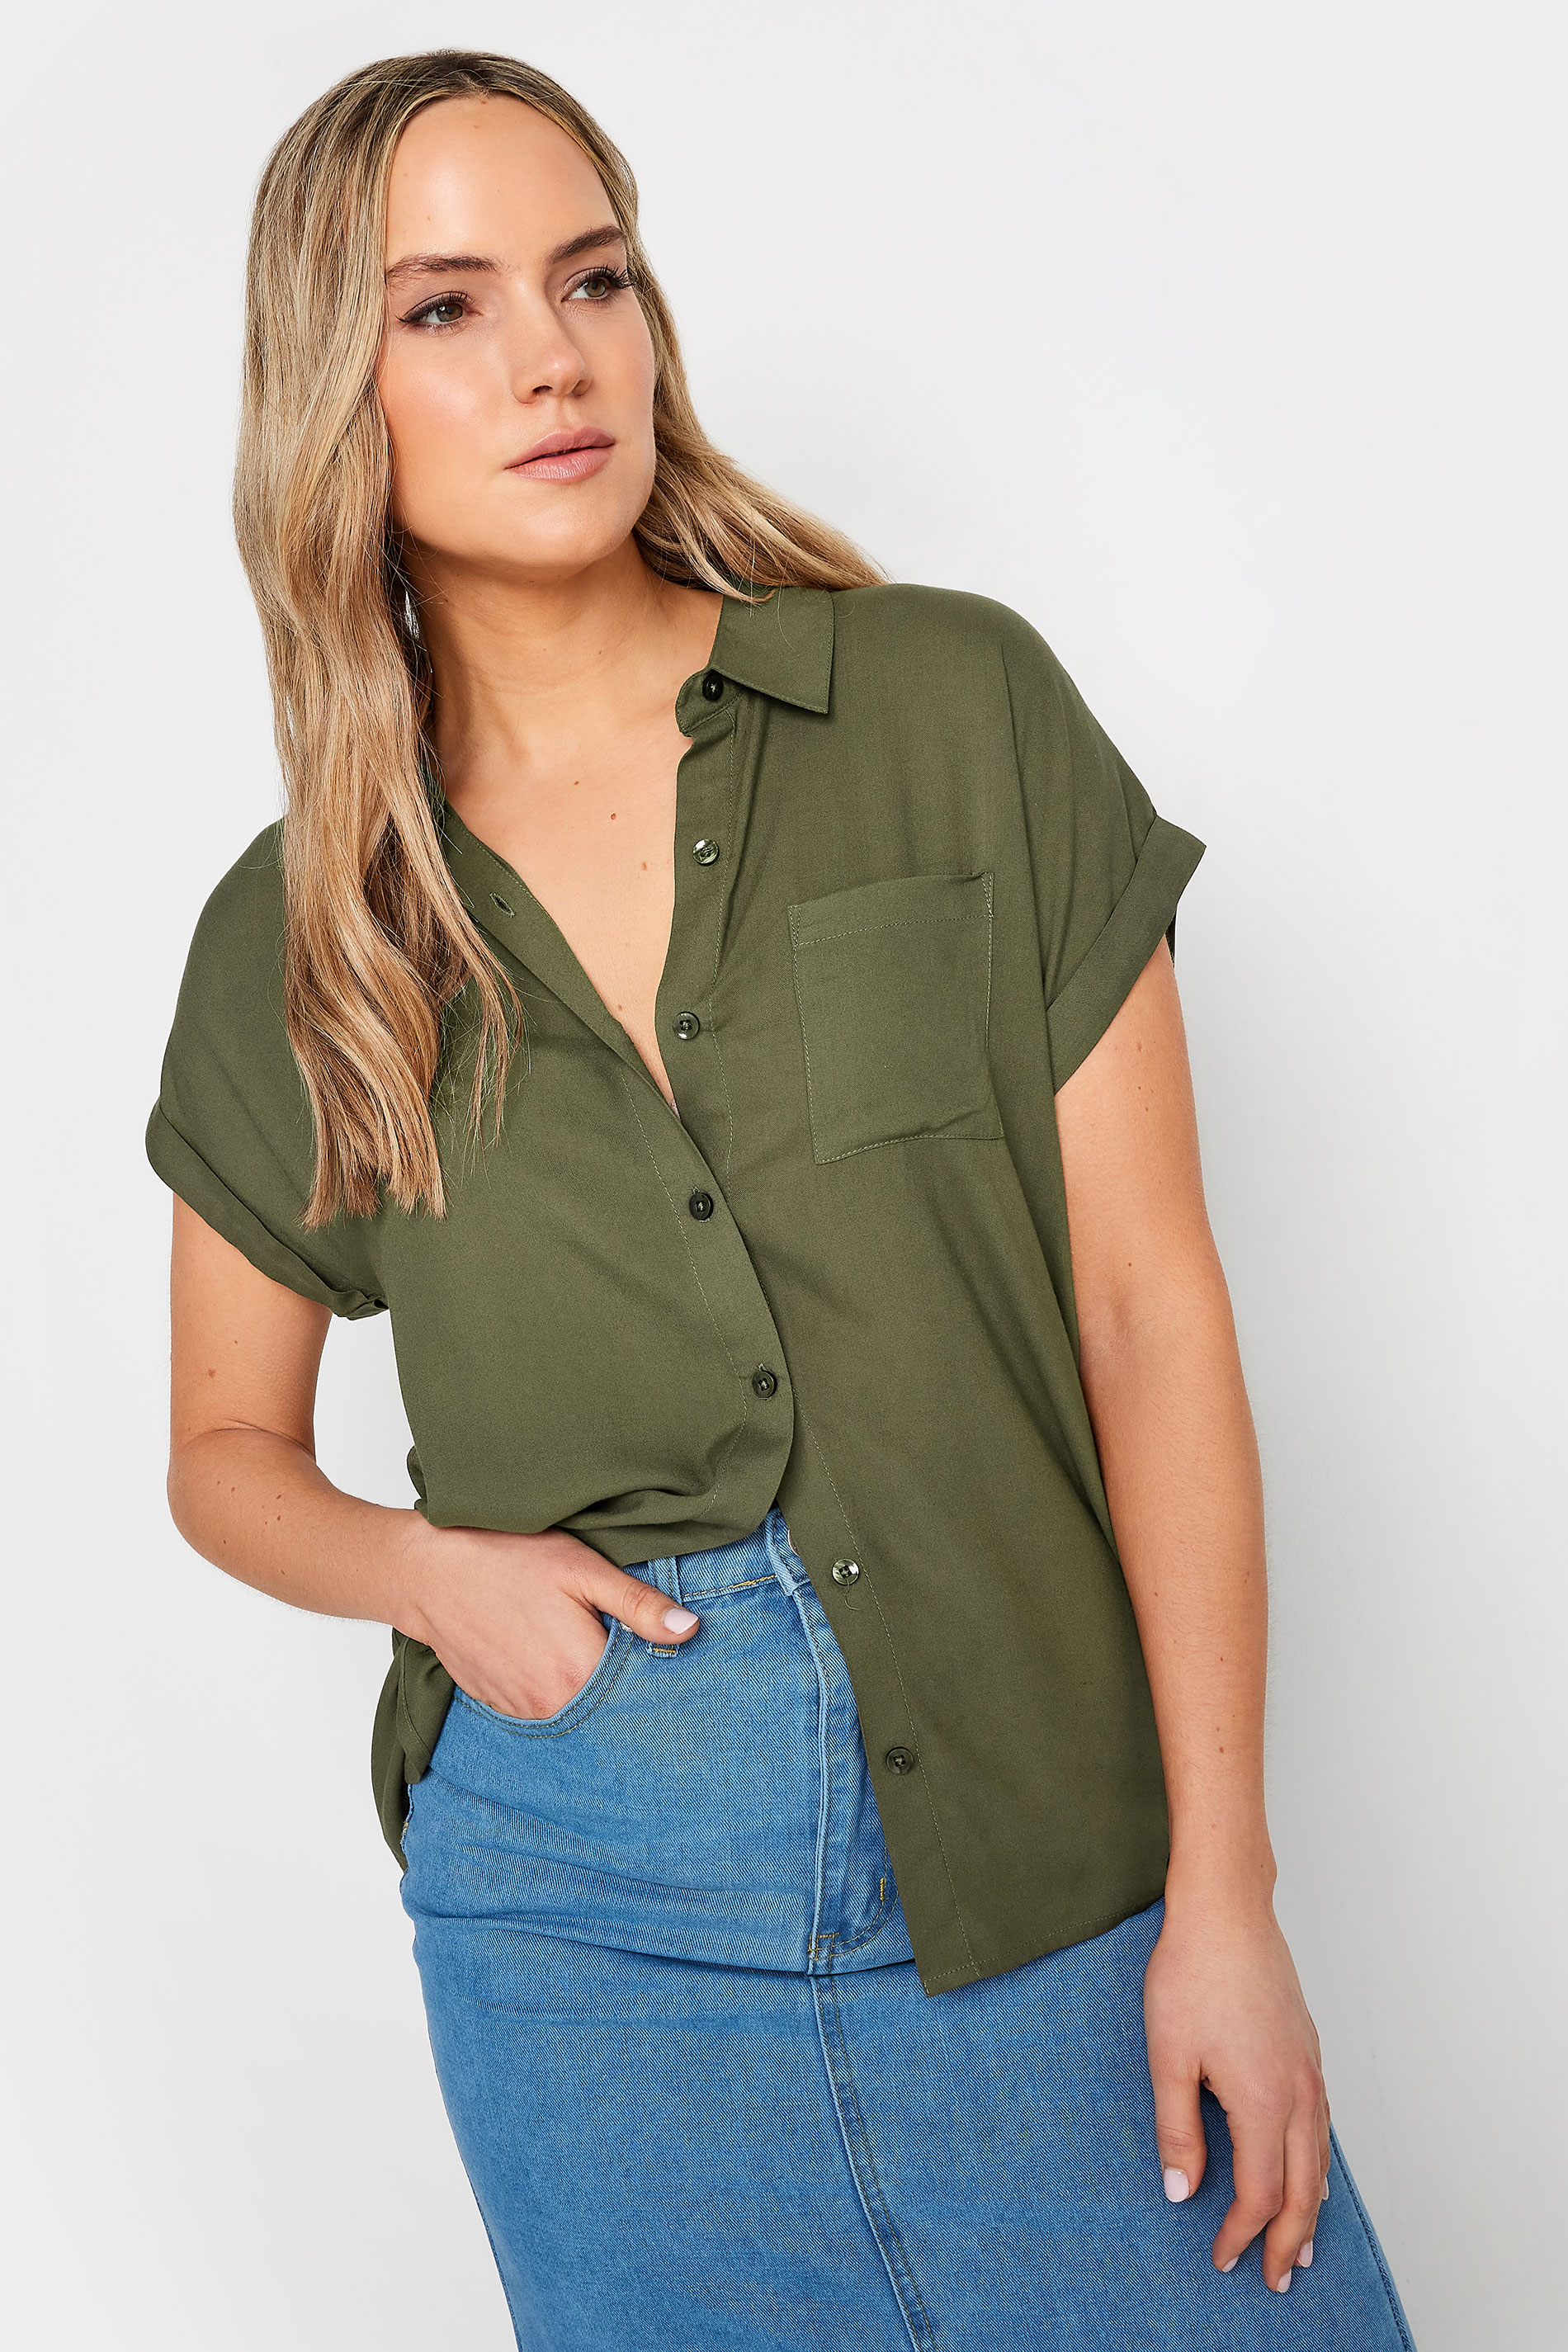 LTS Tall Womens Khaki Green Short Sleeve Shirt | Long Tall Sally 1